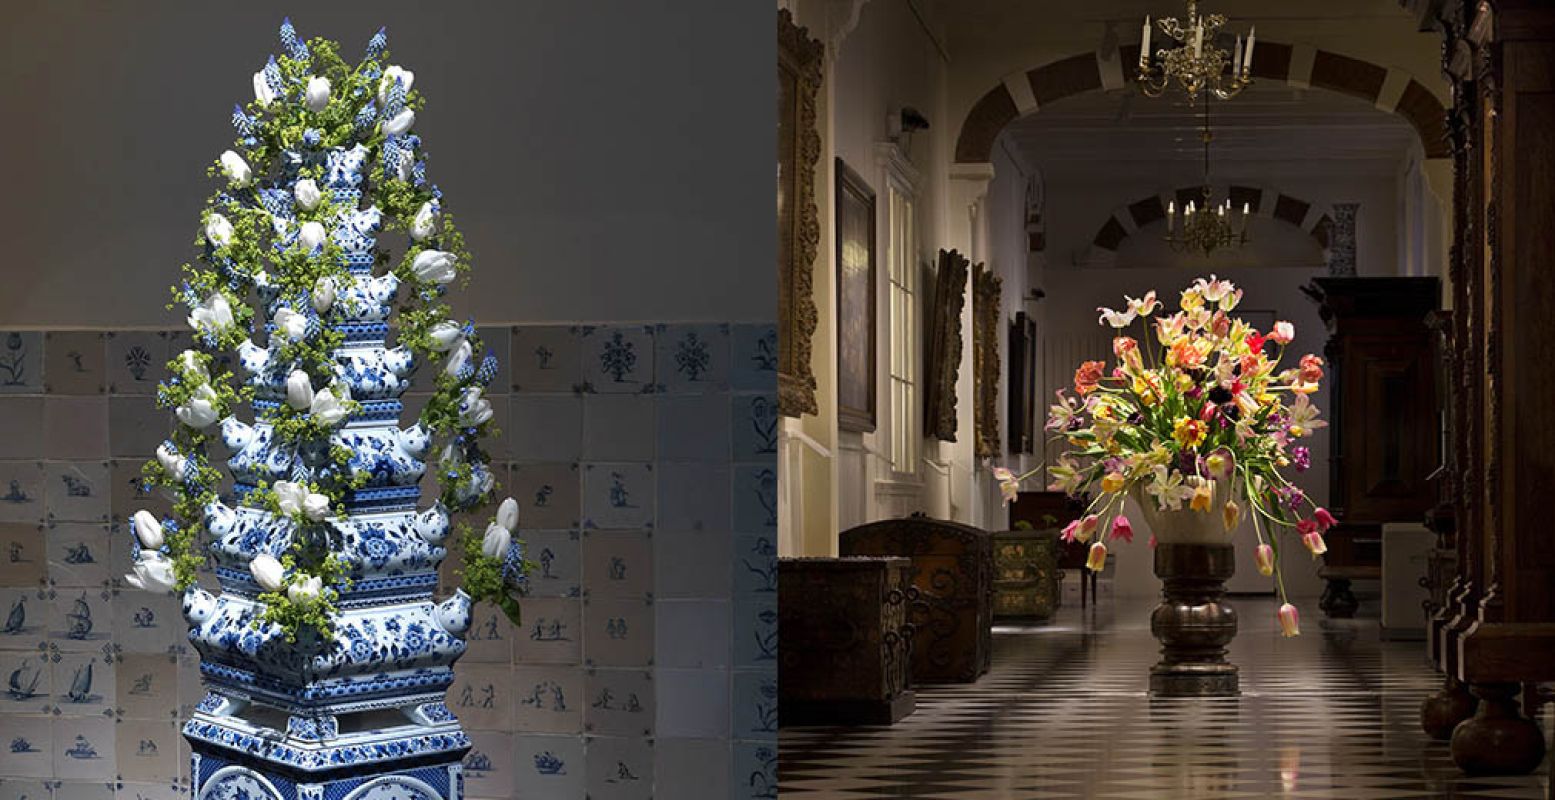 Het Frans Hals Museum in Haarlem is bezaaid met prachtige bloemstukken en bijzondere vazen. Links: Gert Jan van Rooij. Rechts: Inga Powilleit.